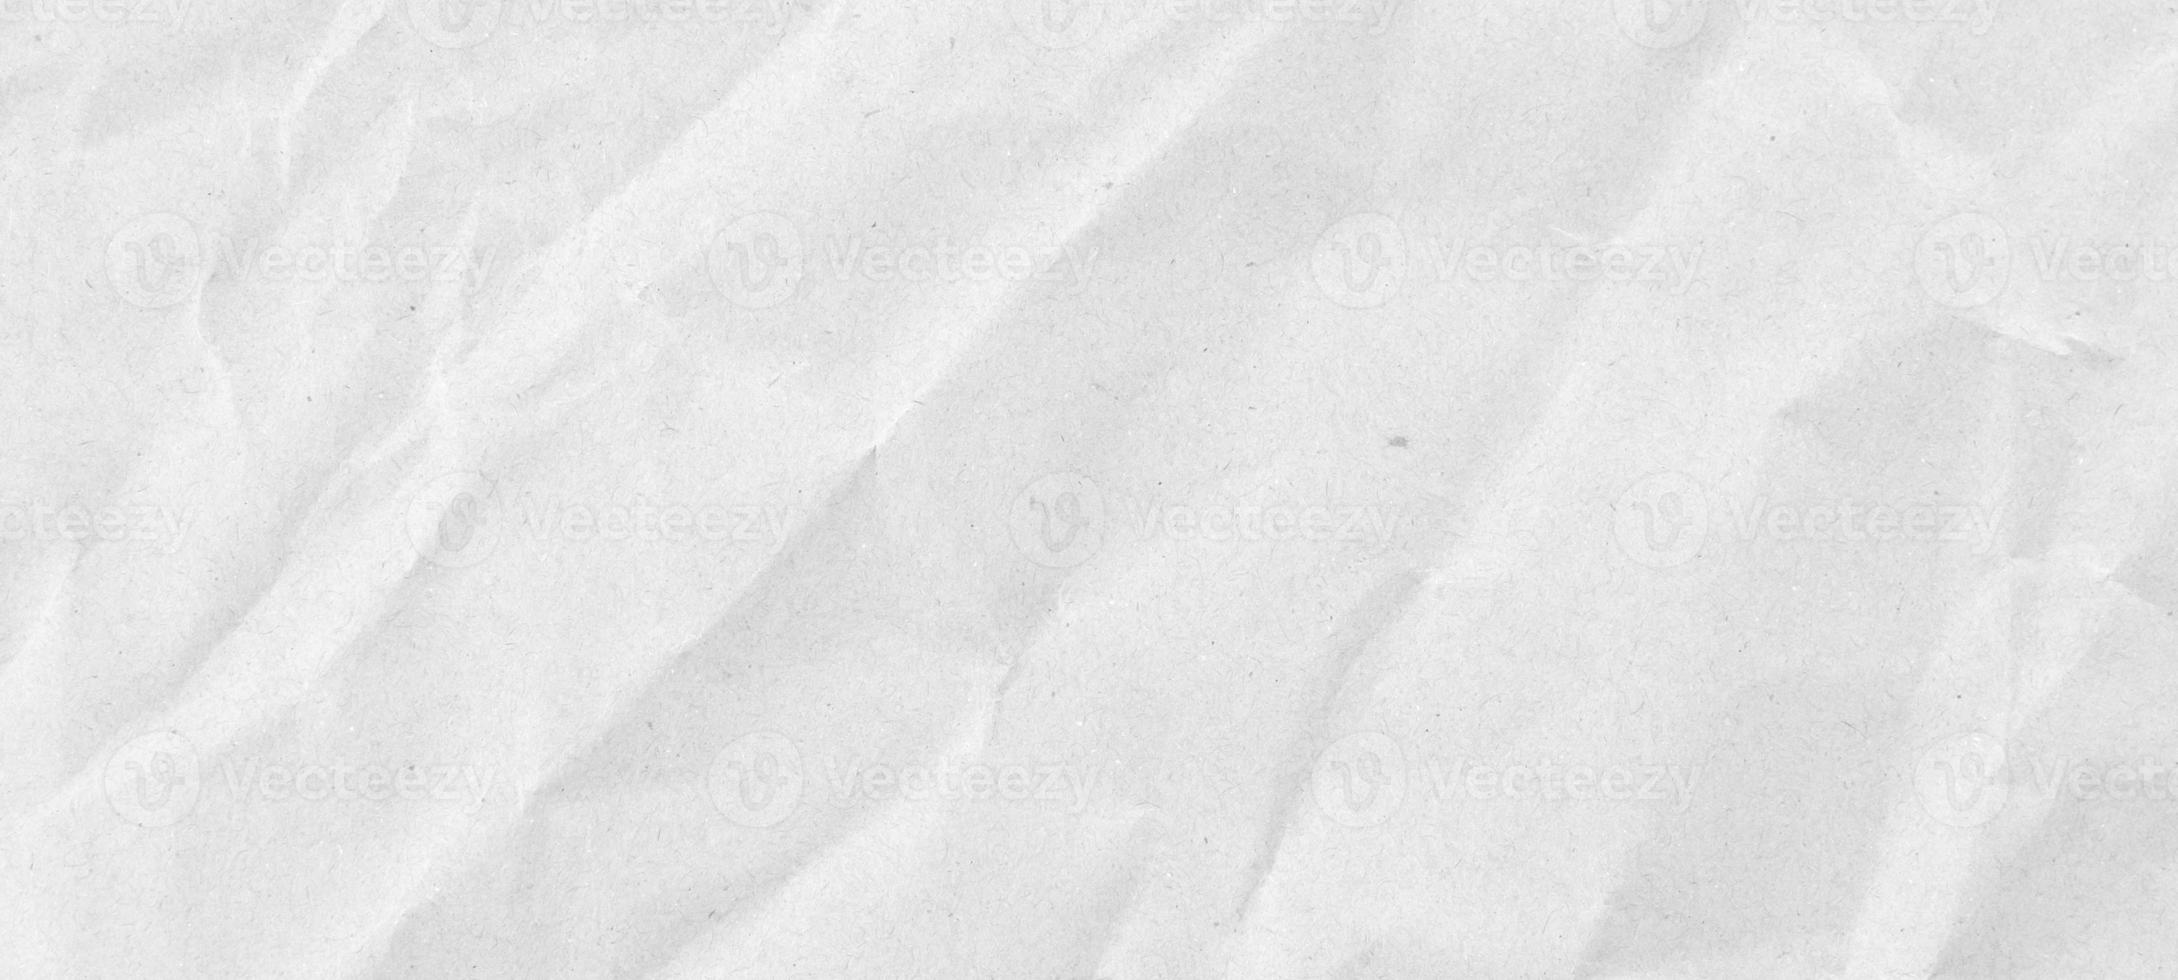 Fondo de textura de papel reciclado arrugado y arrugado blanco abstracto foto